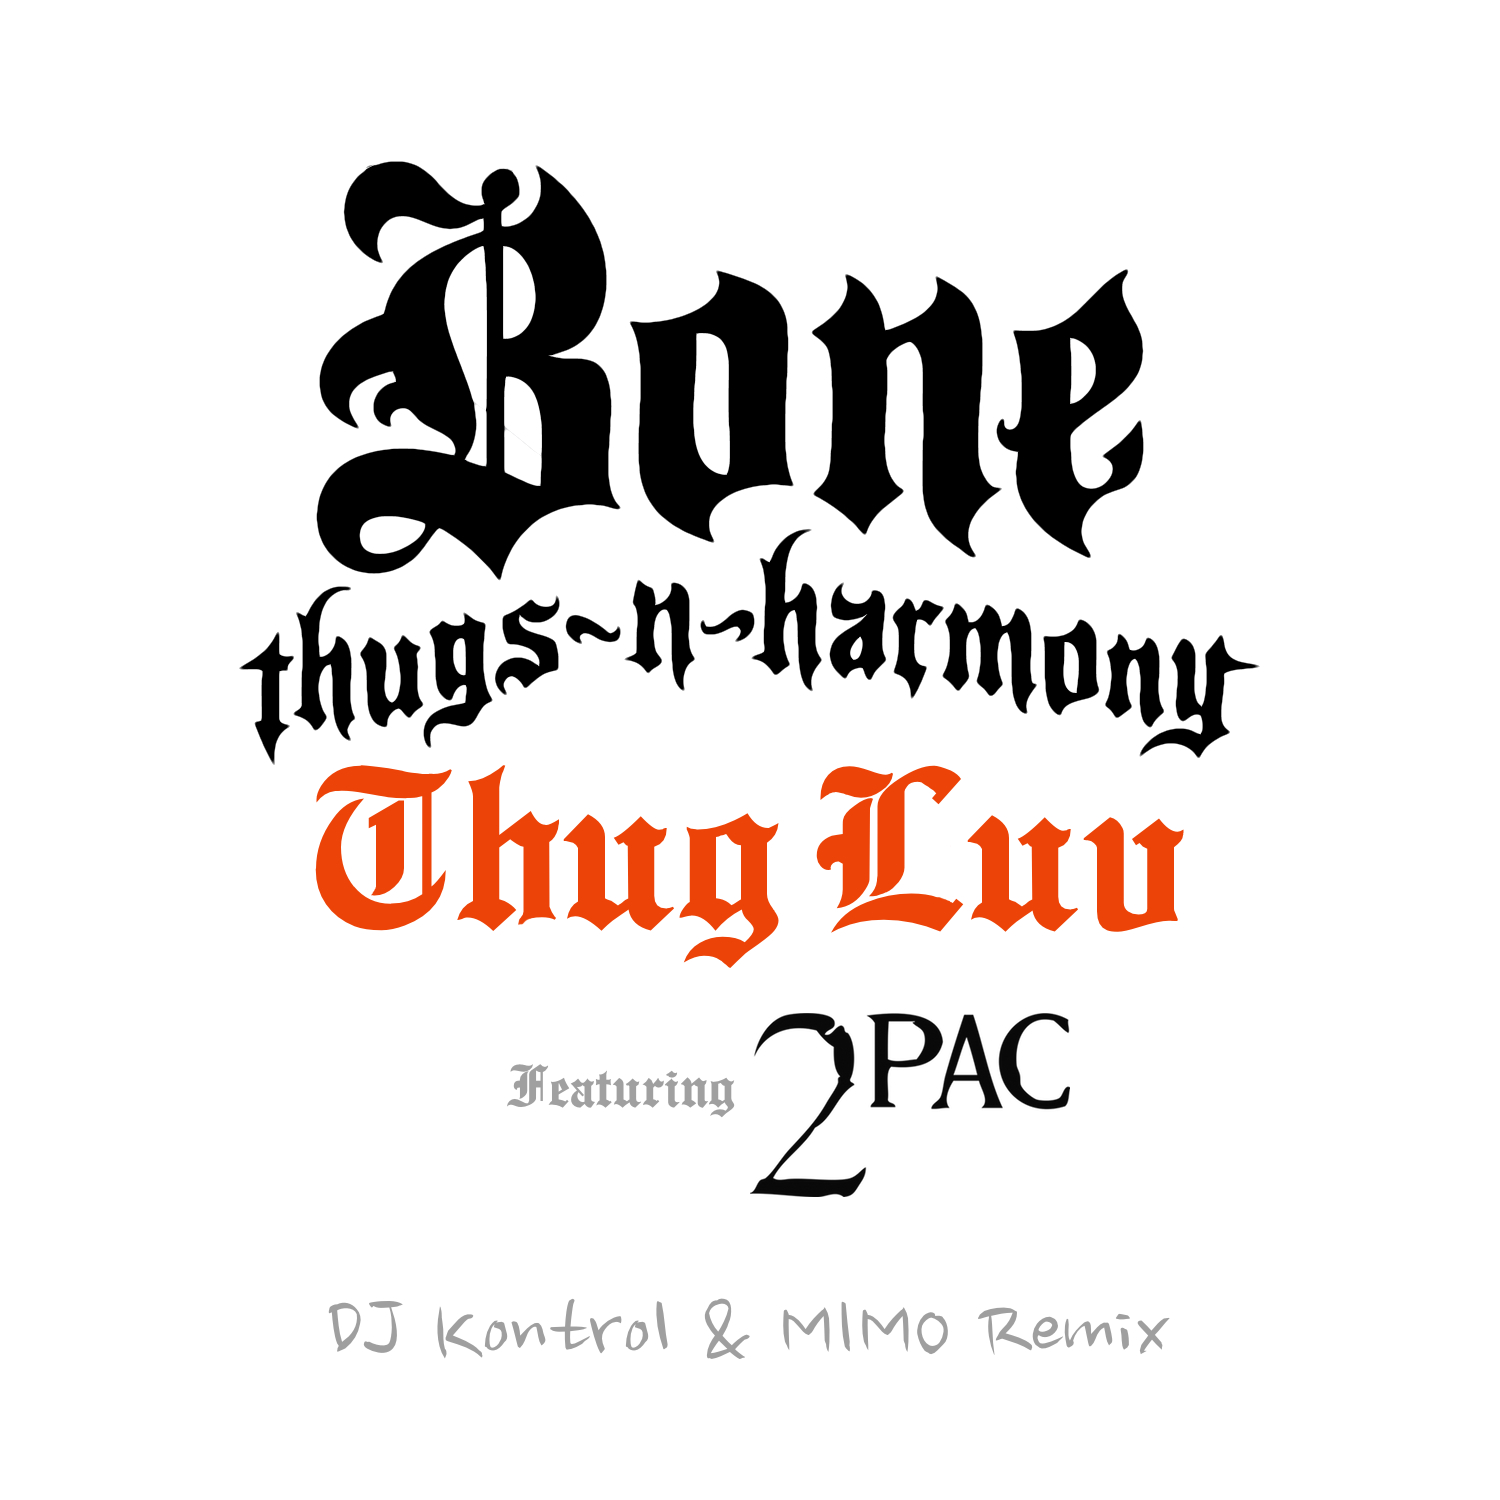 Bone Thugs-N-Harmony - Thug Luv (DJ Kontrol & MIMO Remix)